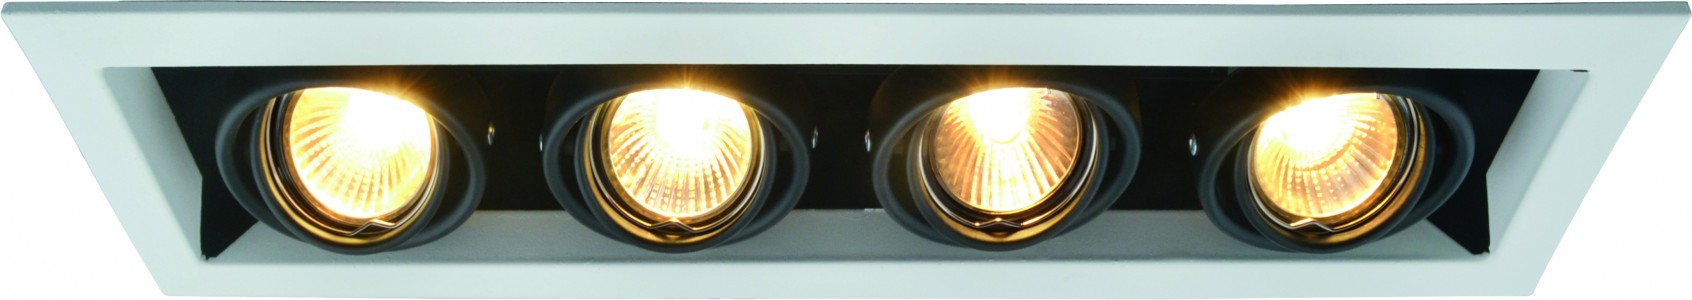 Светильник встраиваемый Arte Lamp A5941pl-4wh (A5941PL-4WH)